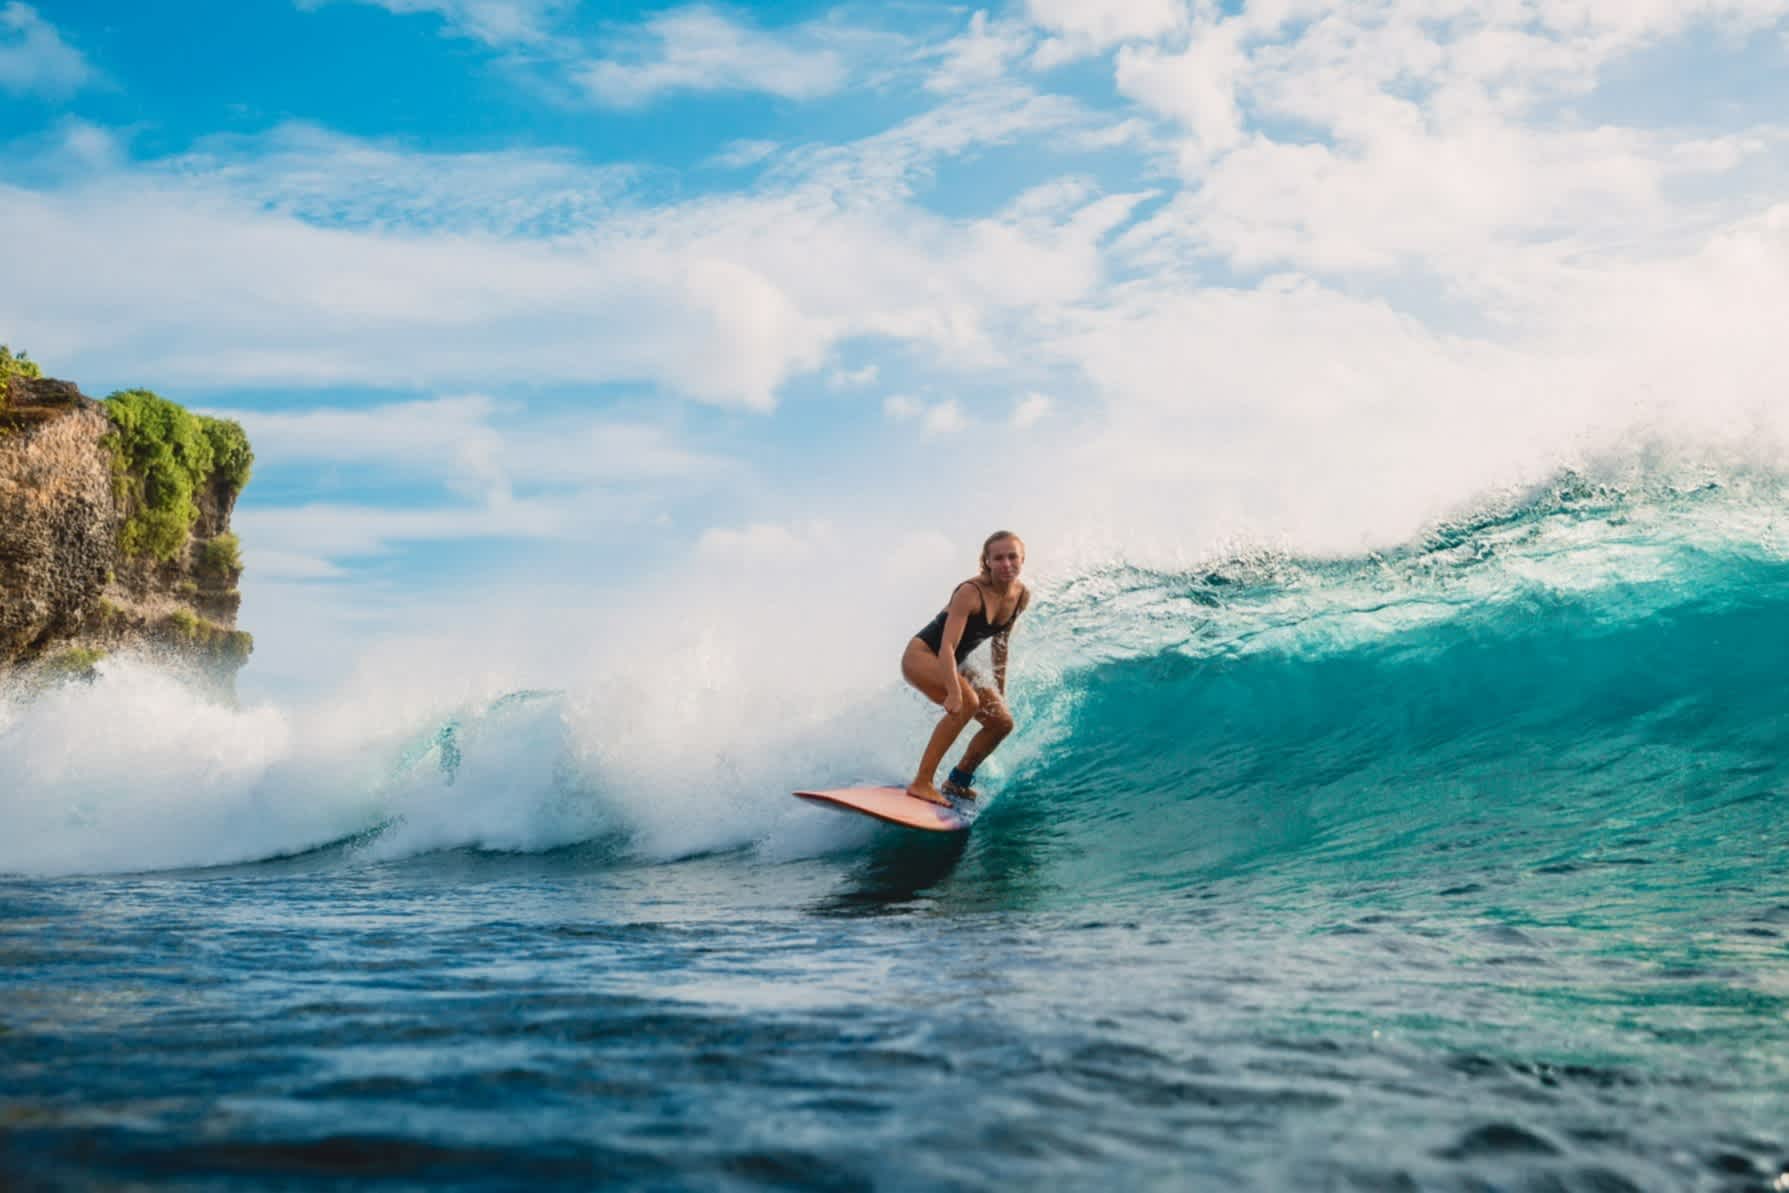 Das Mädchen auf Surfbrett in Bali, Indonesien

